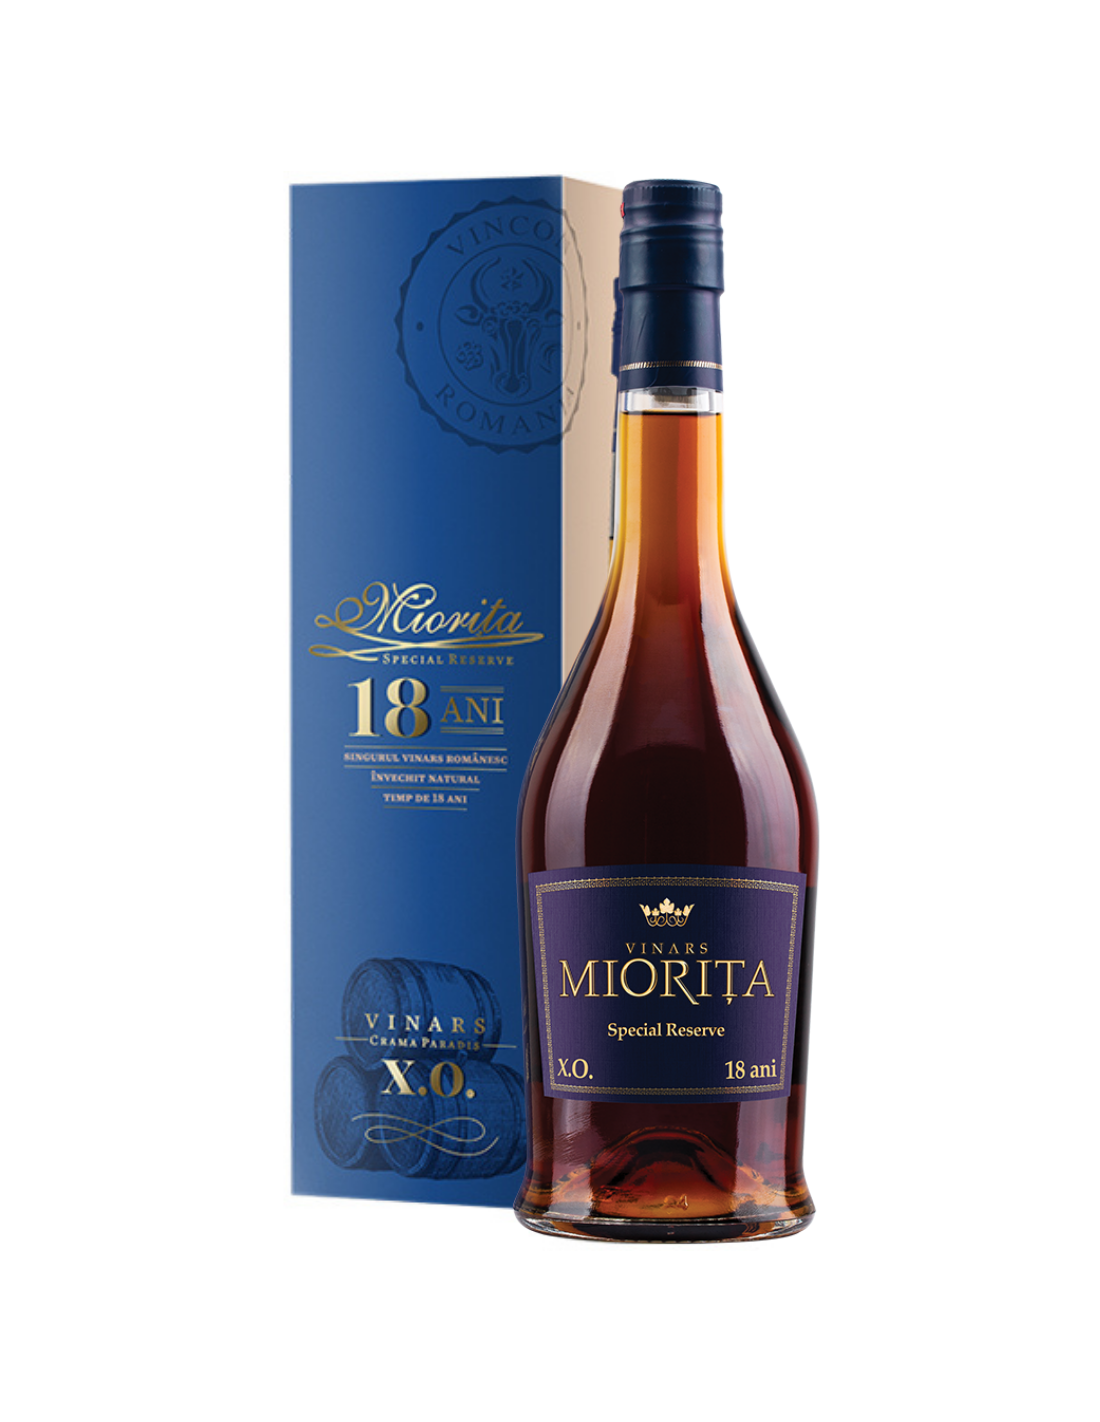 Vinars Miorita X.O. 18 ani Special Reserve, 40% alc., 0.7L, Romania alcooldiscount.ro